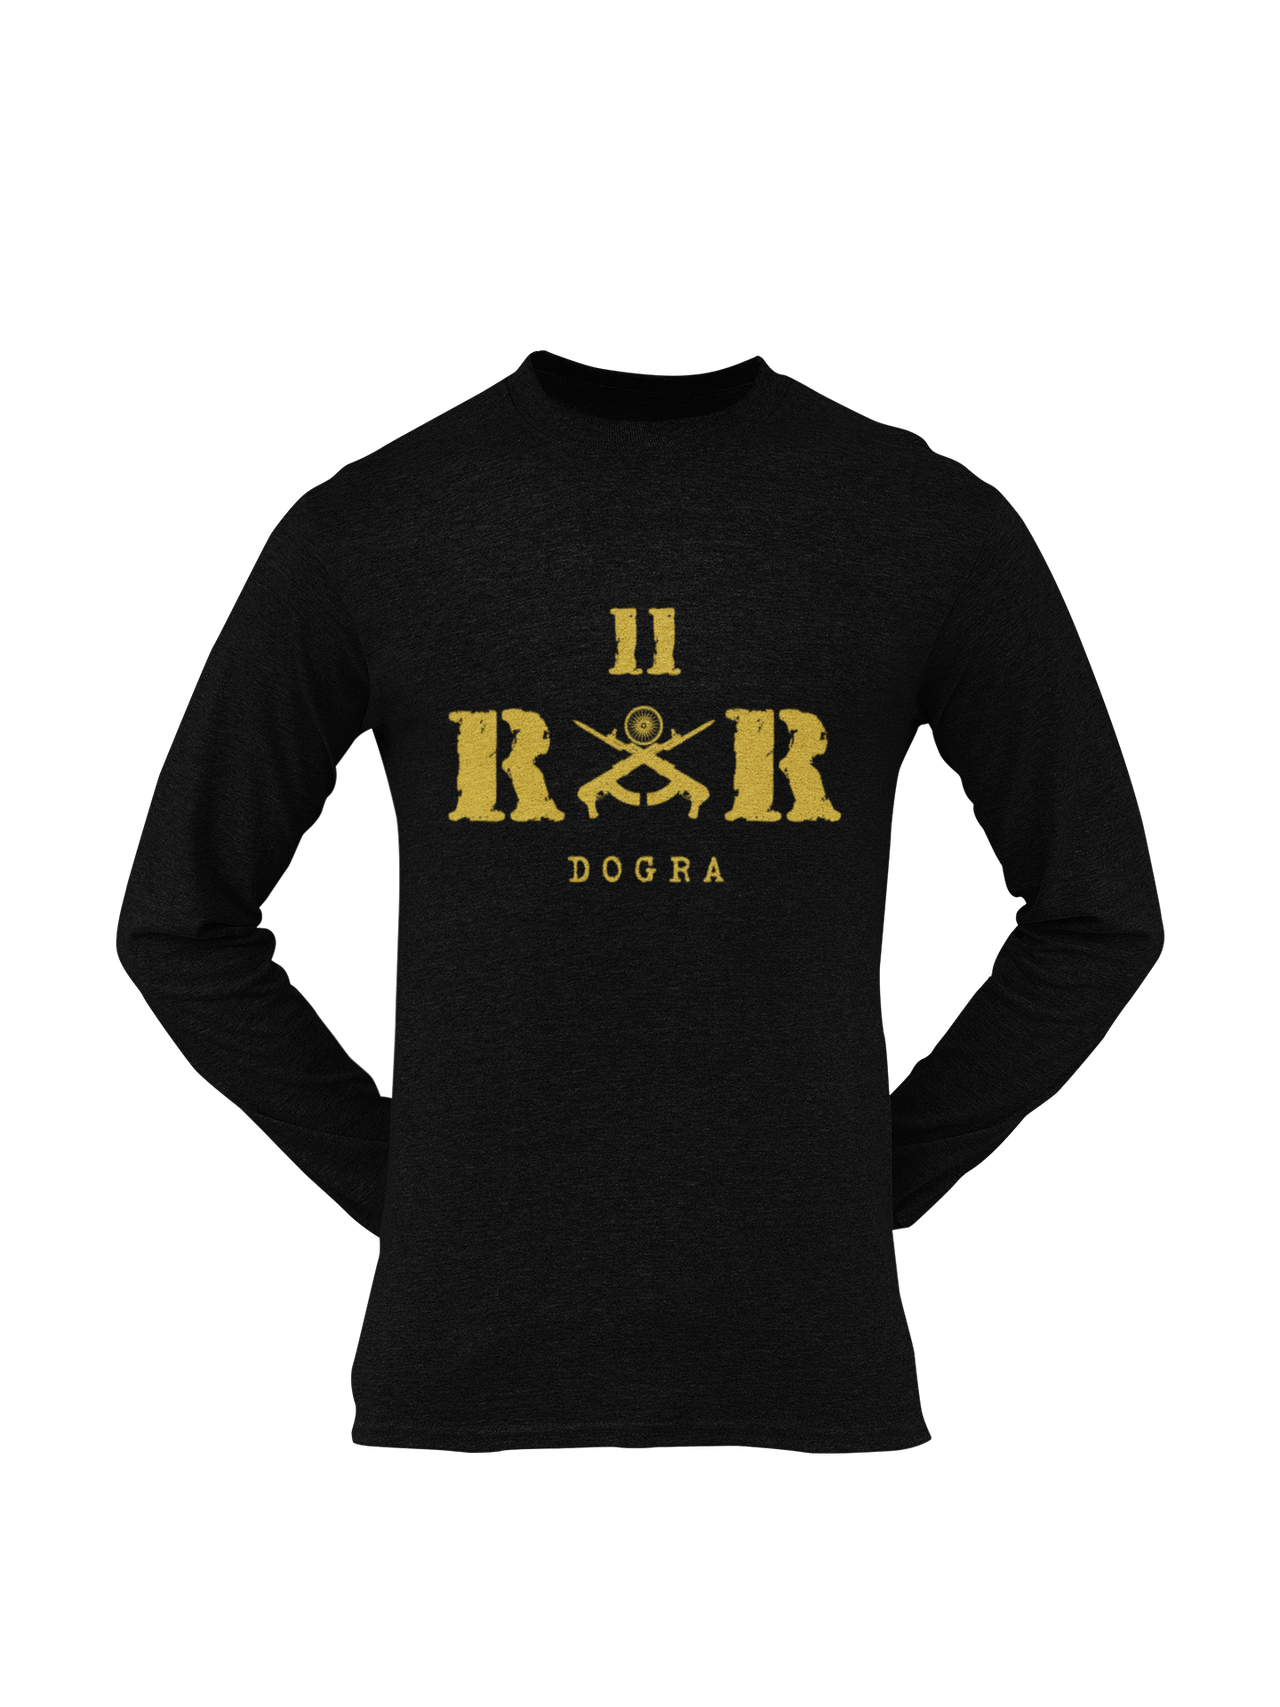 Rashtriya Rifles T-shirt - 11 RR Dogra (Men)